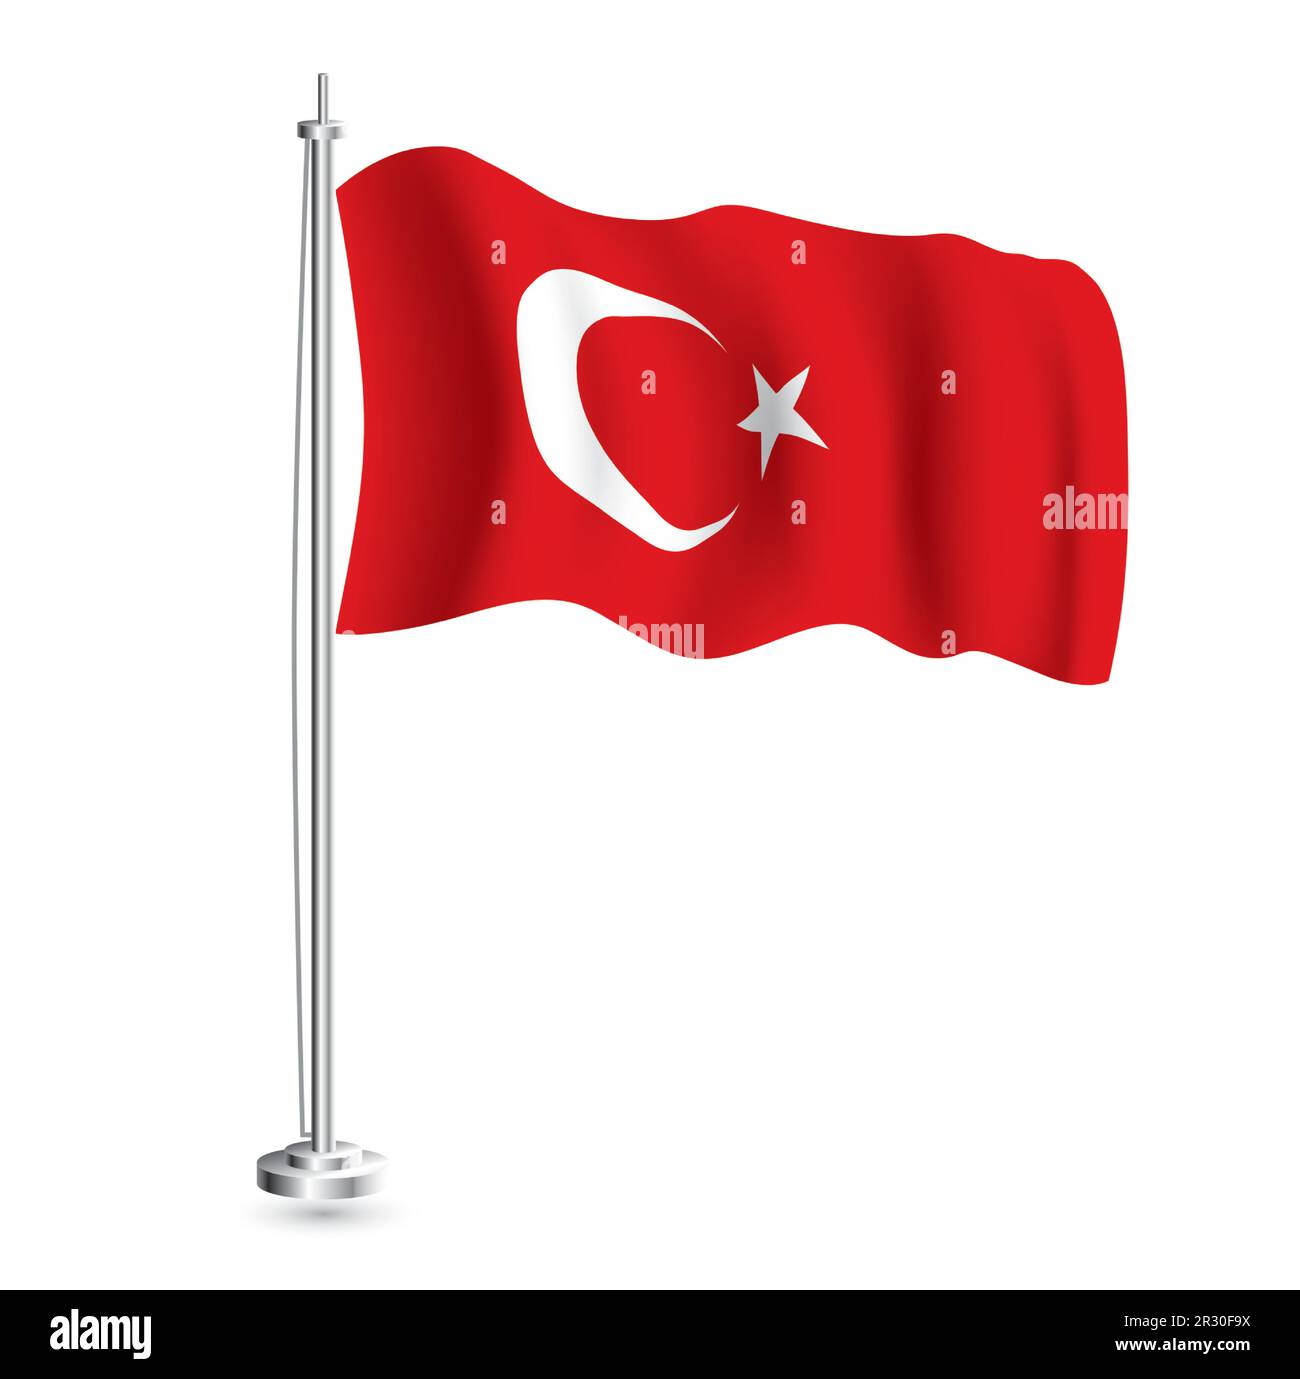 Türkische Flagge. Isolierte realistische Wellenflagge des türkischen Landes auf Flaggenmast. Vektordarstellung. Stock Vektor